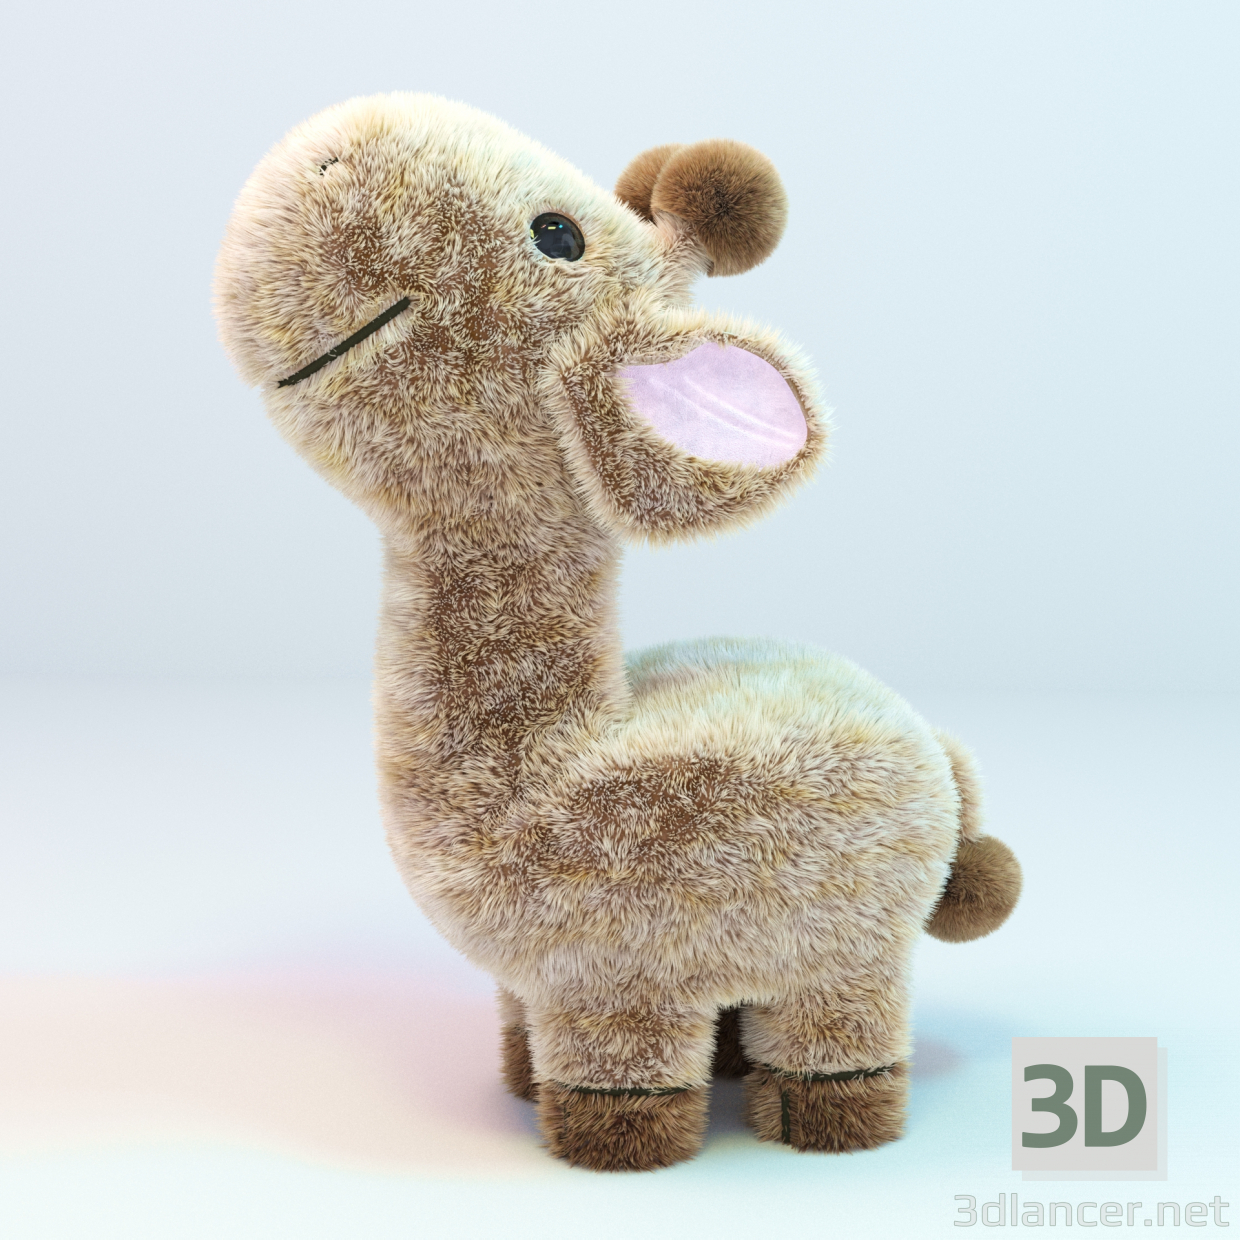 3d Giraffe model buy - render